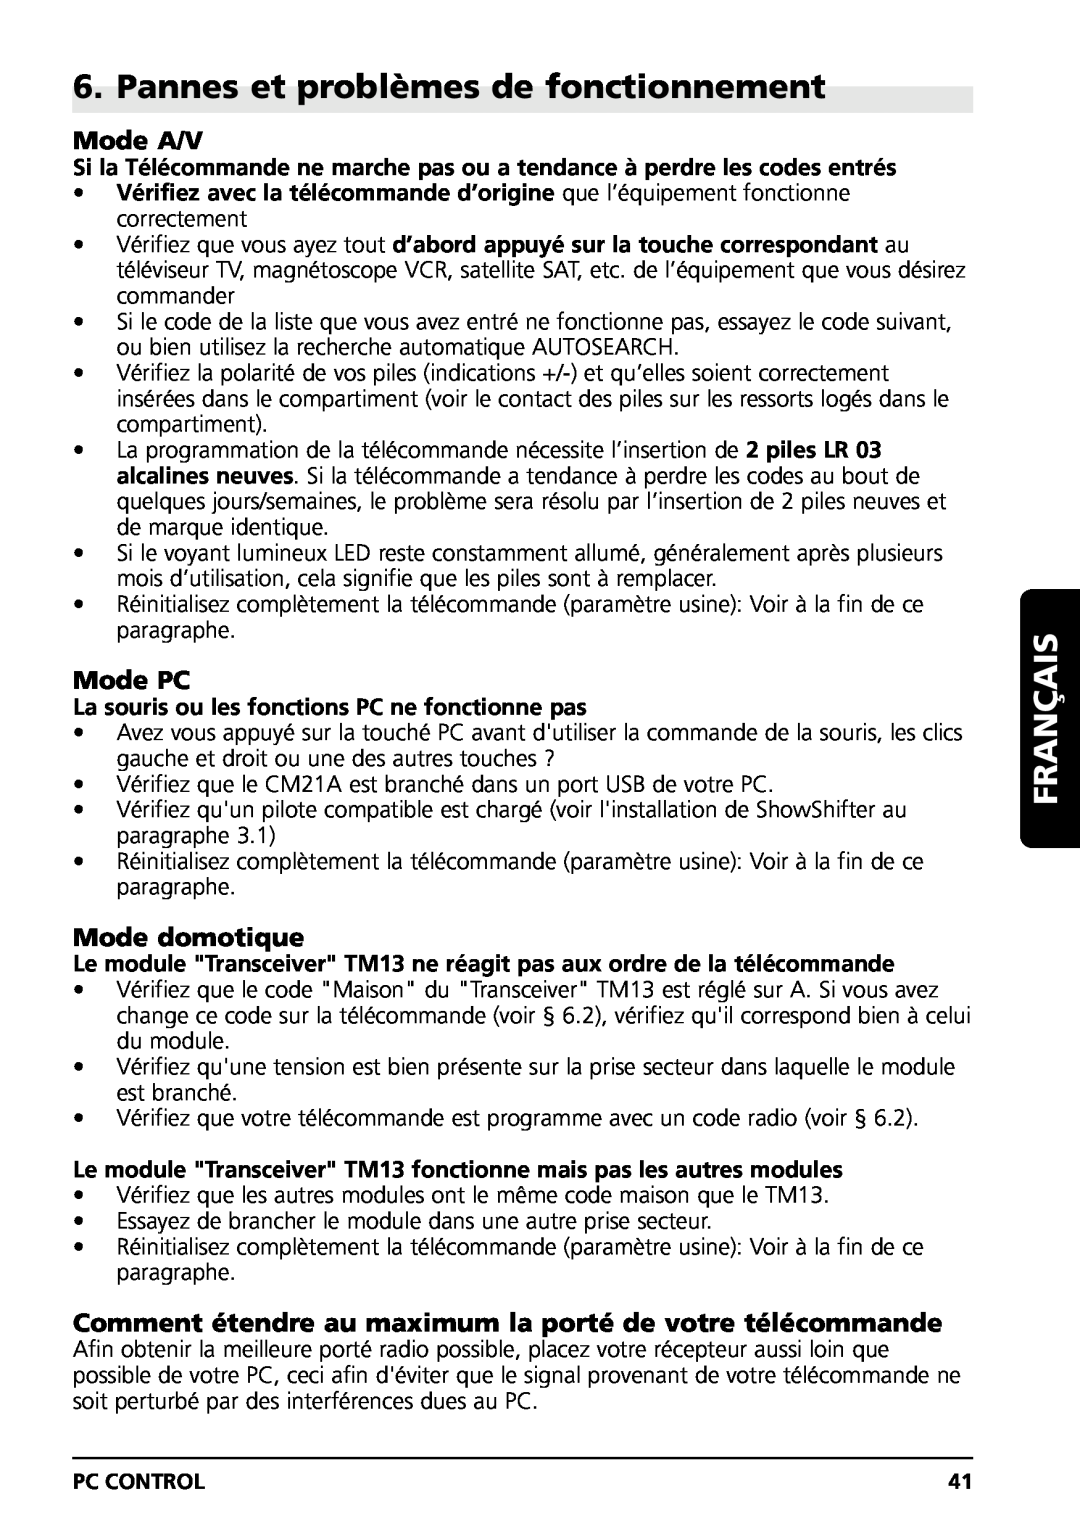 Marmitek PC CONTROL owner manual Pannes et problèmes de fonctionnement, Mode A/V, Mode PC, Mode domotique, Français 